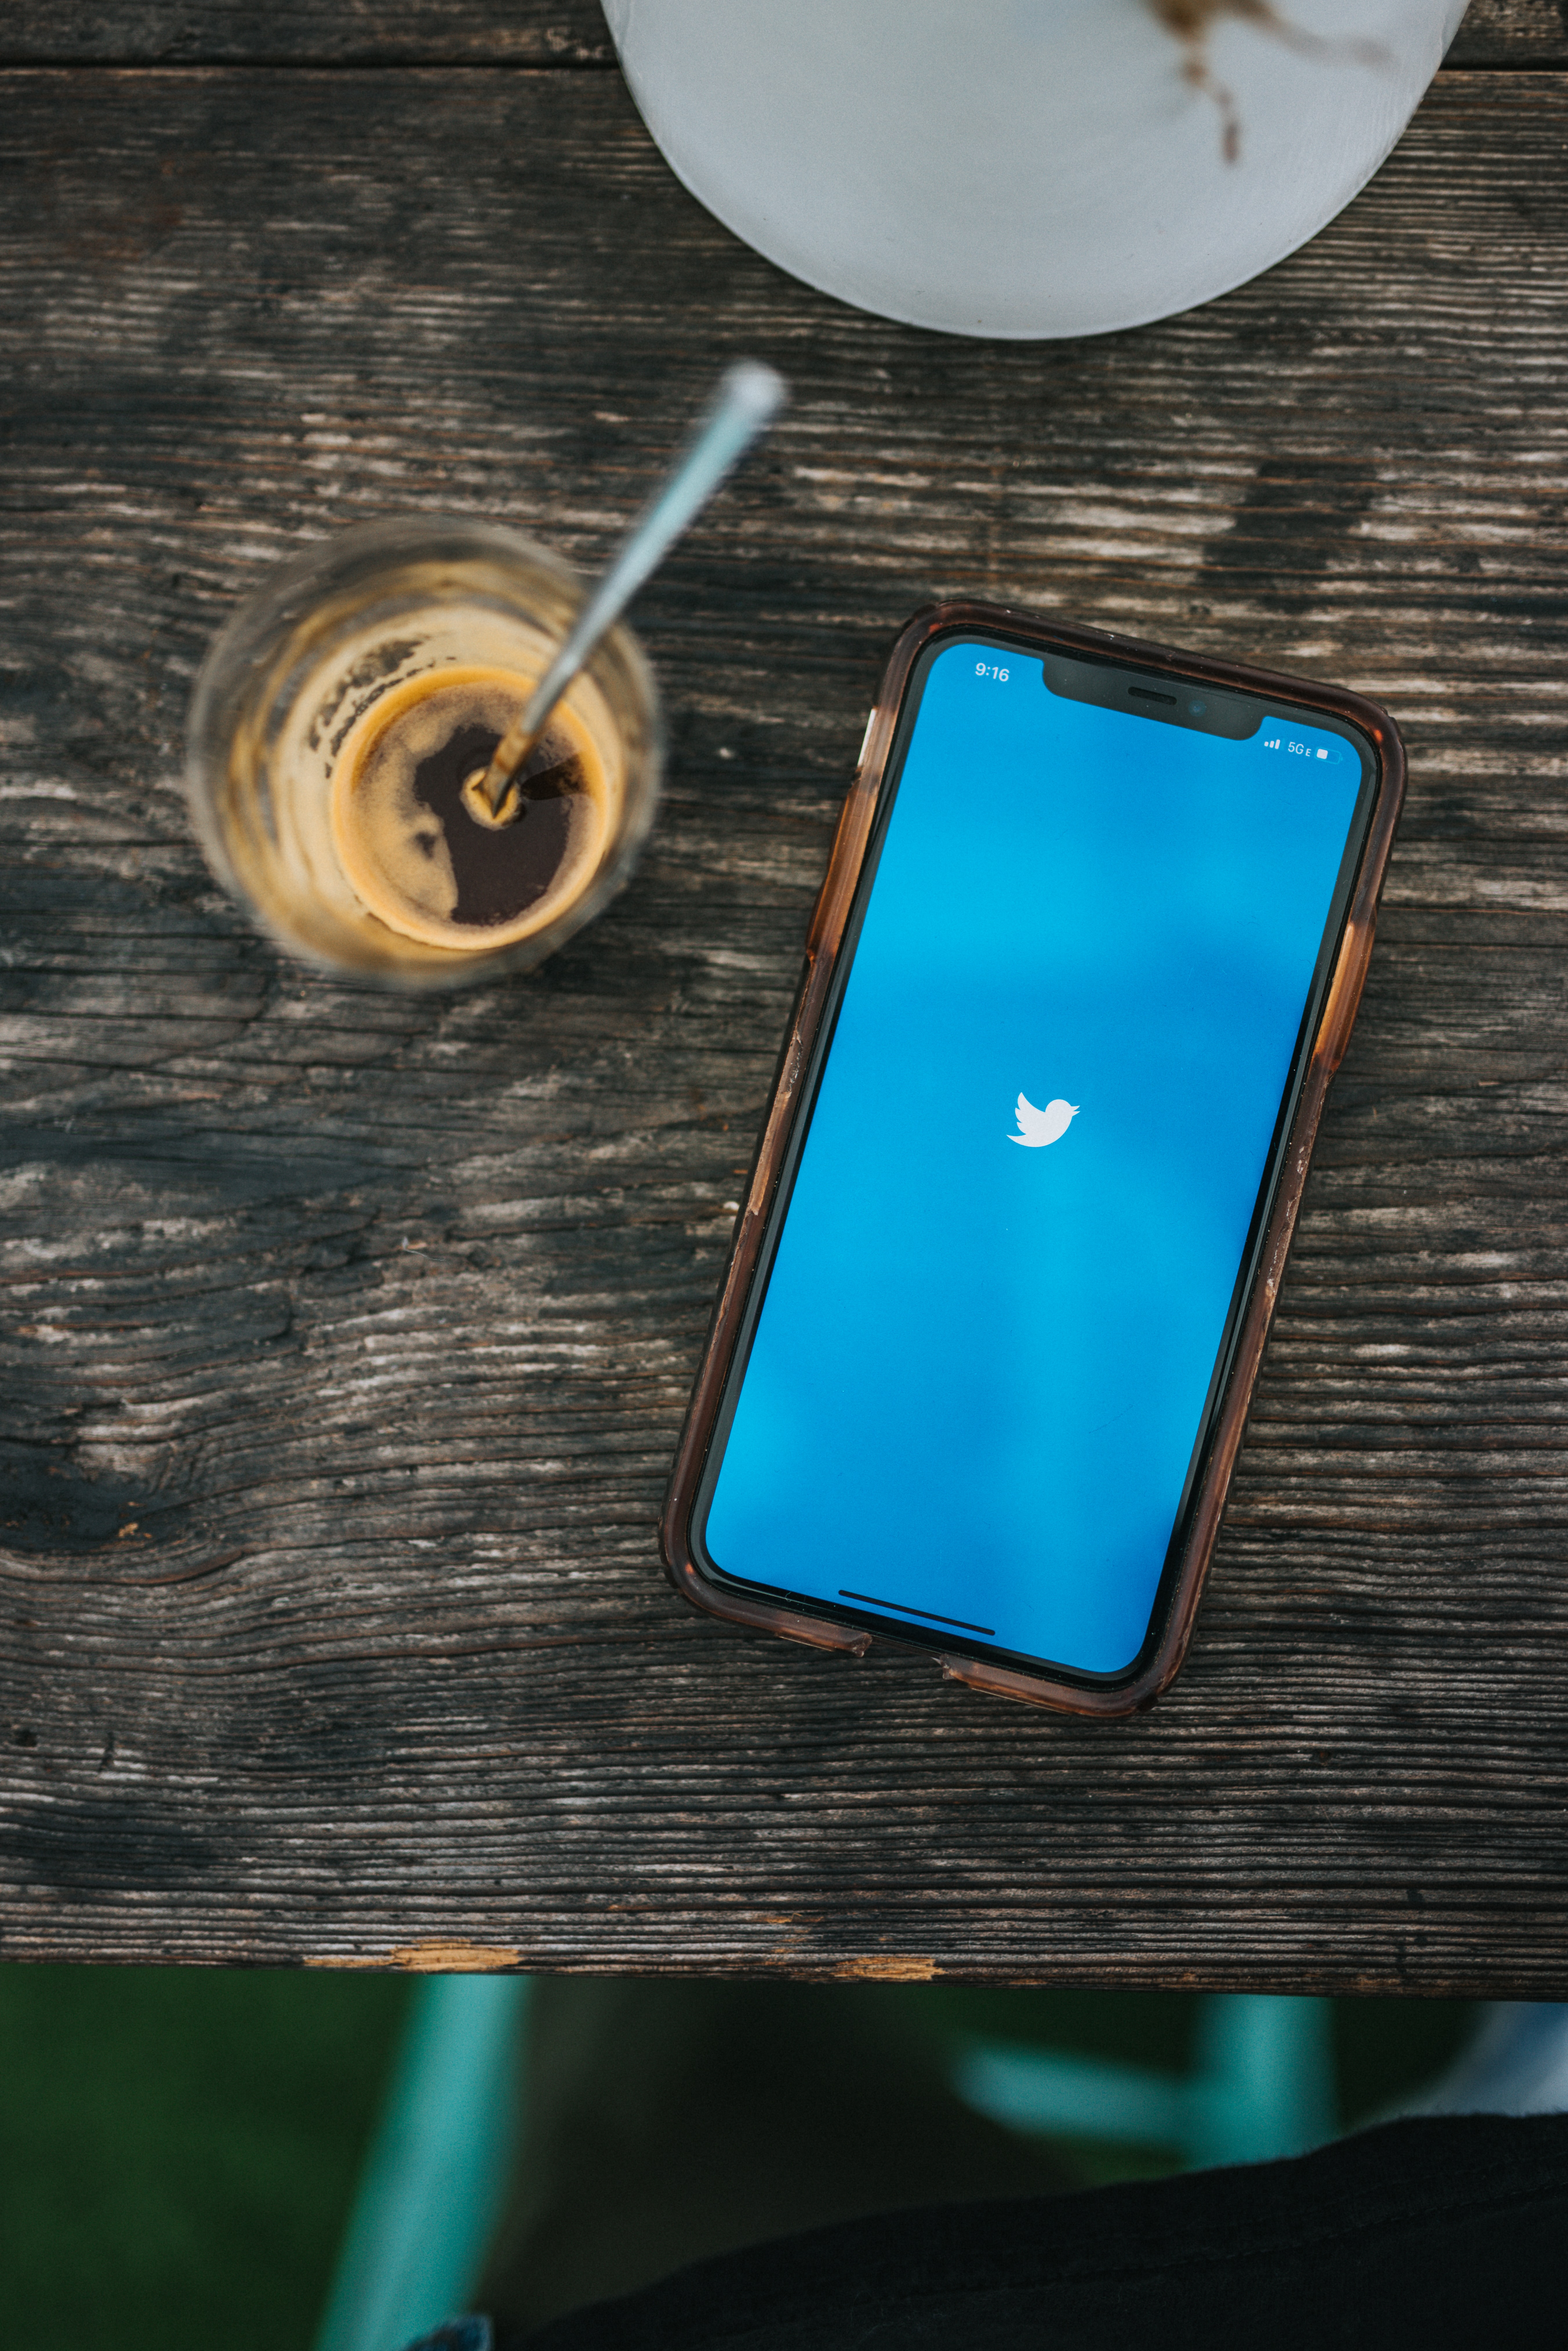 推特是全球最強大的社群媒體之一，用戶言論自由受其制約。（Photo by Nathan Dumlao on Unsplash）